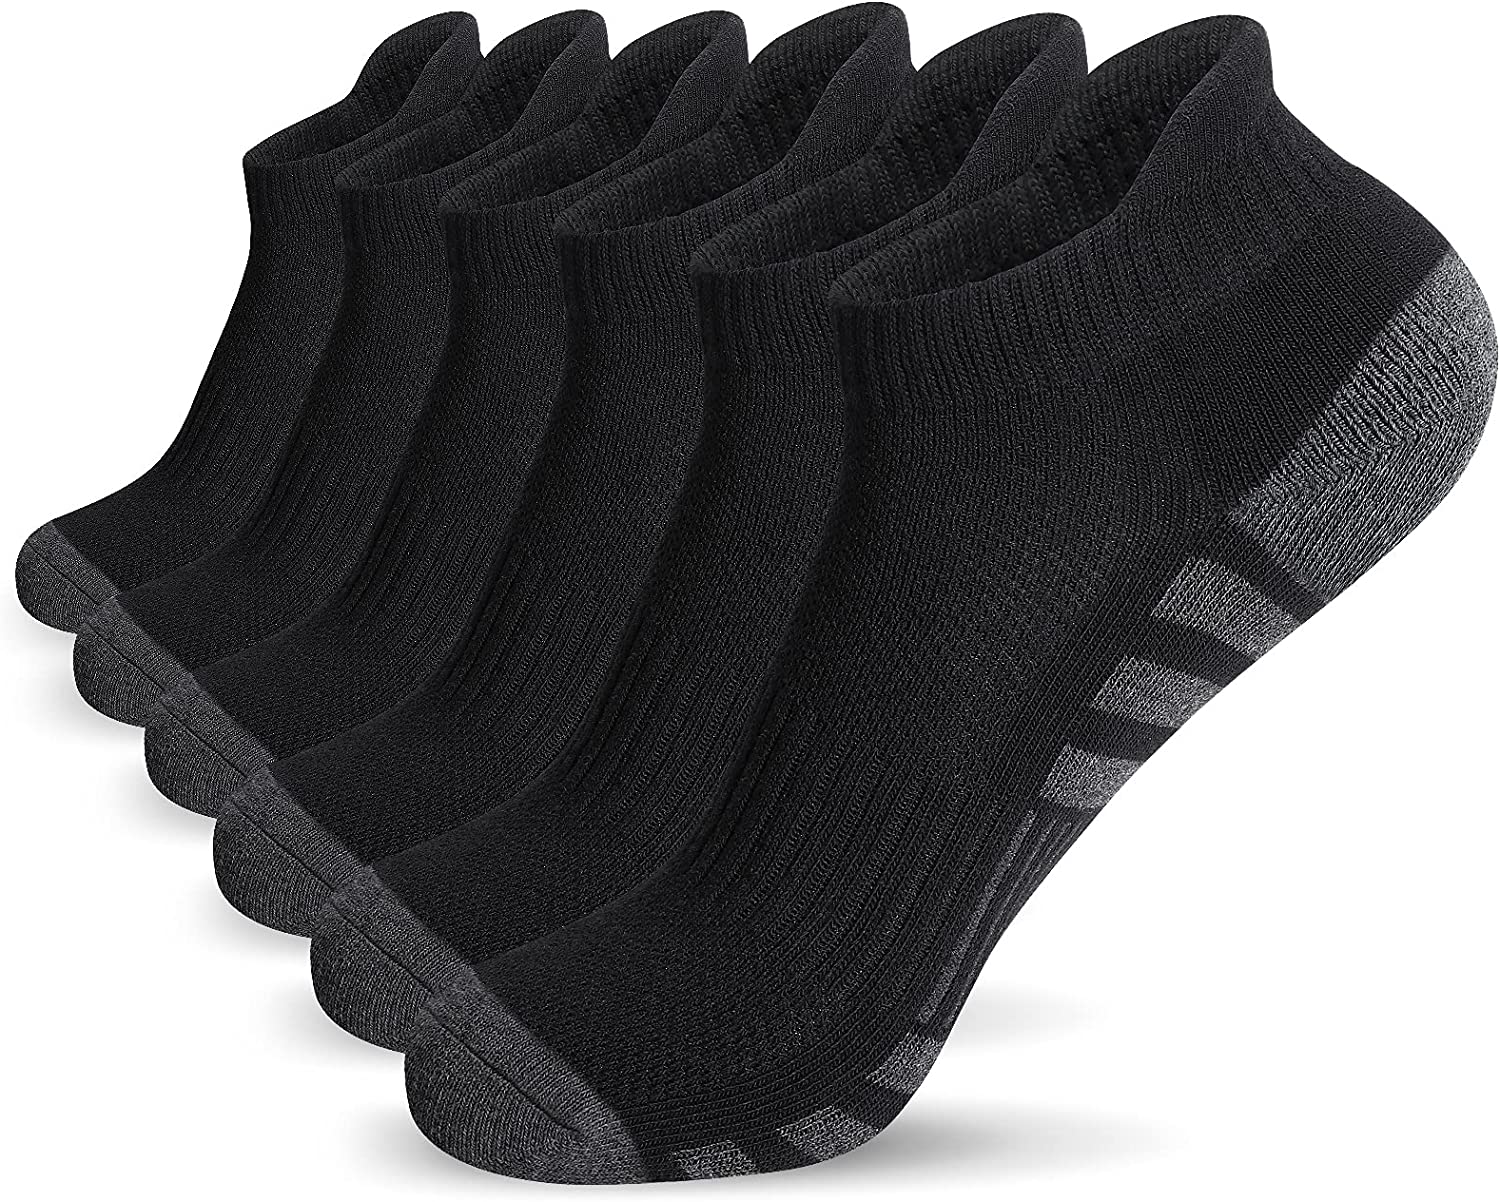 Low-Cut Ankle Socks - Sport Socks